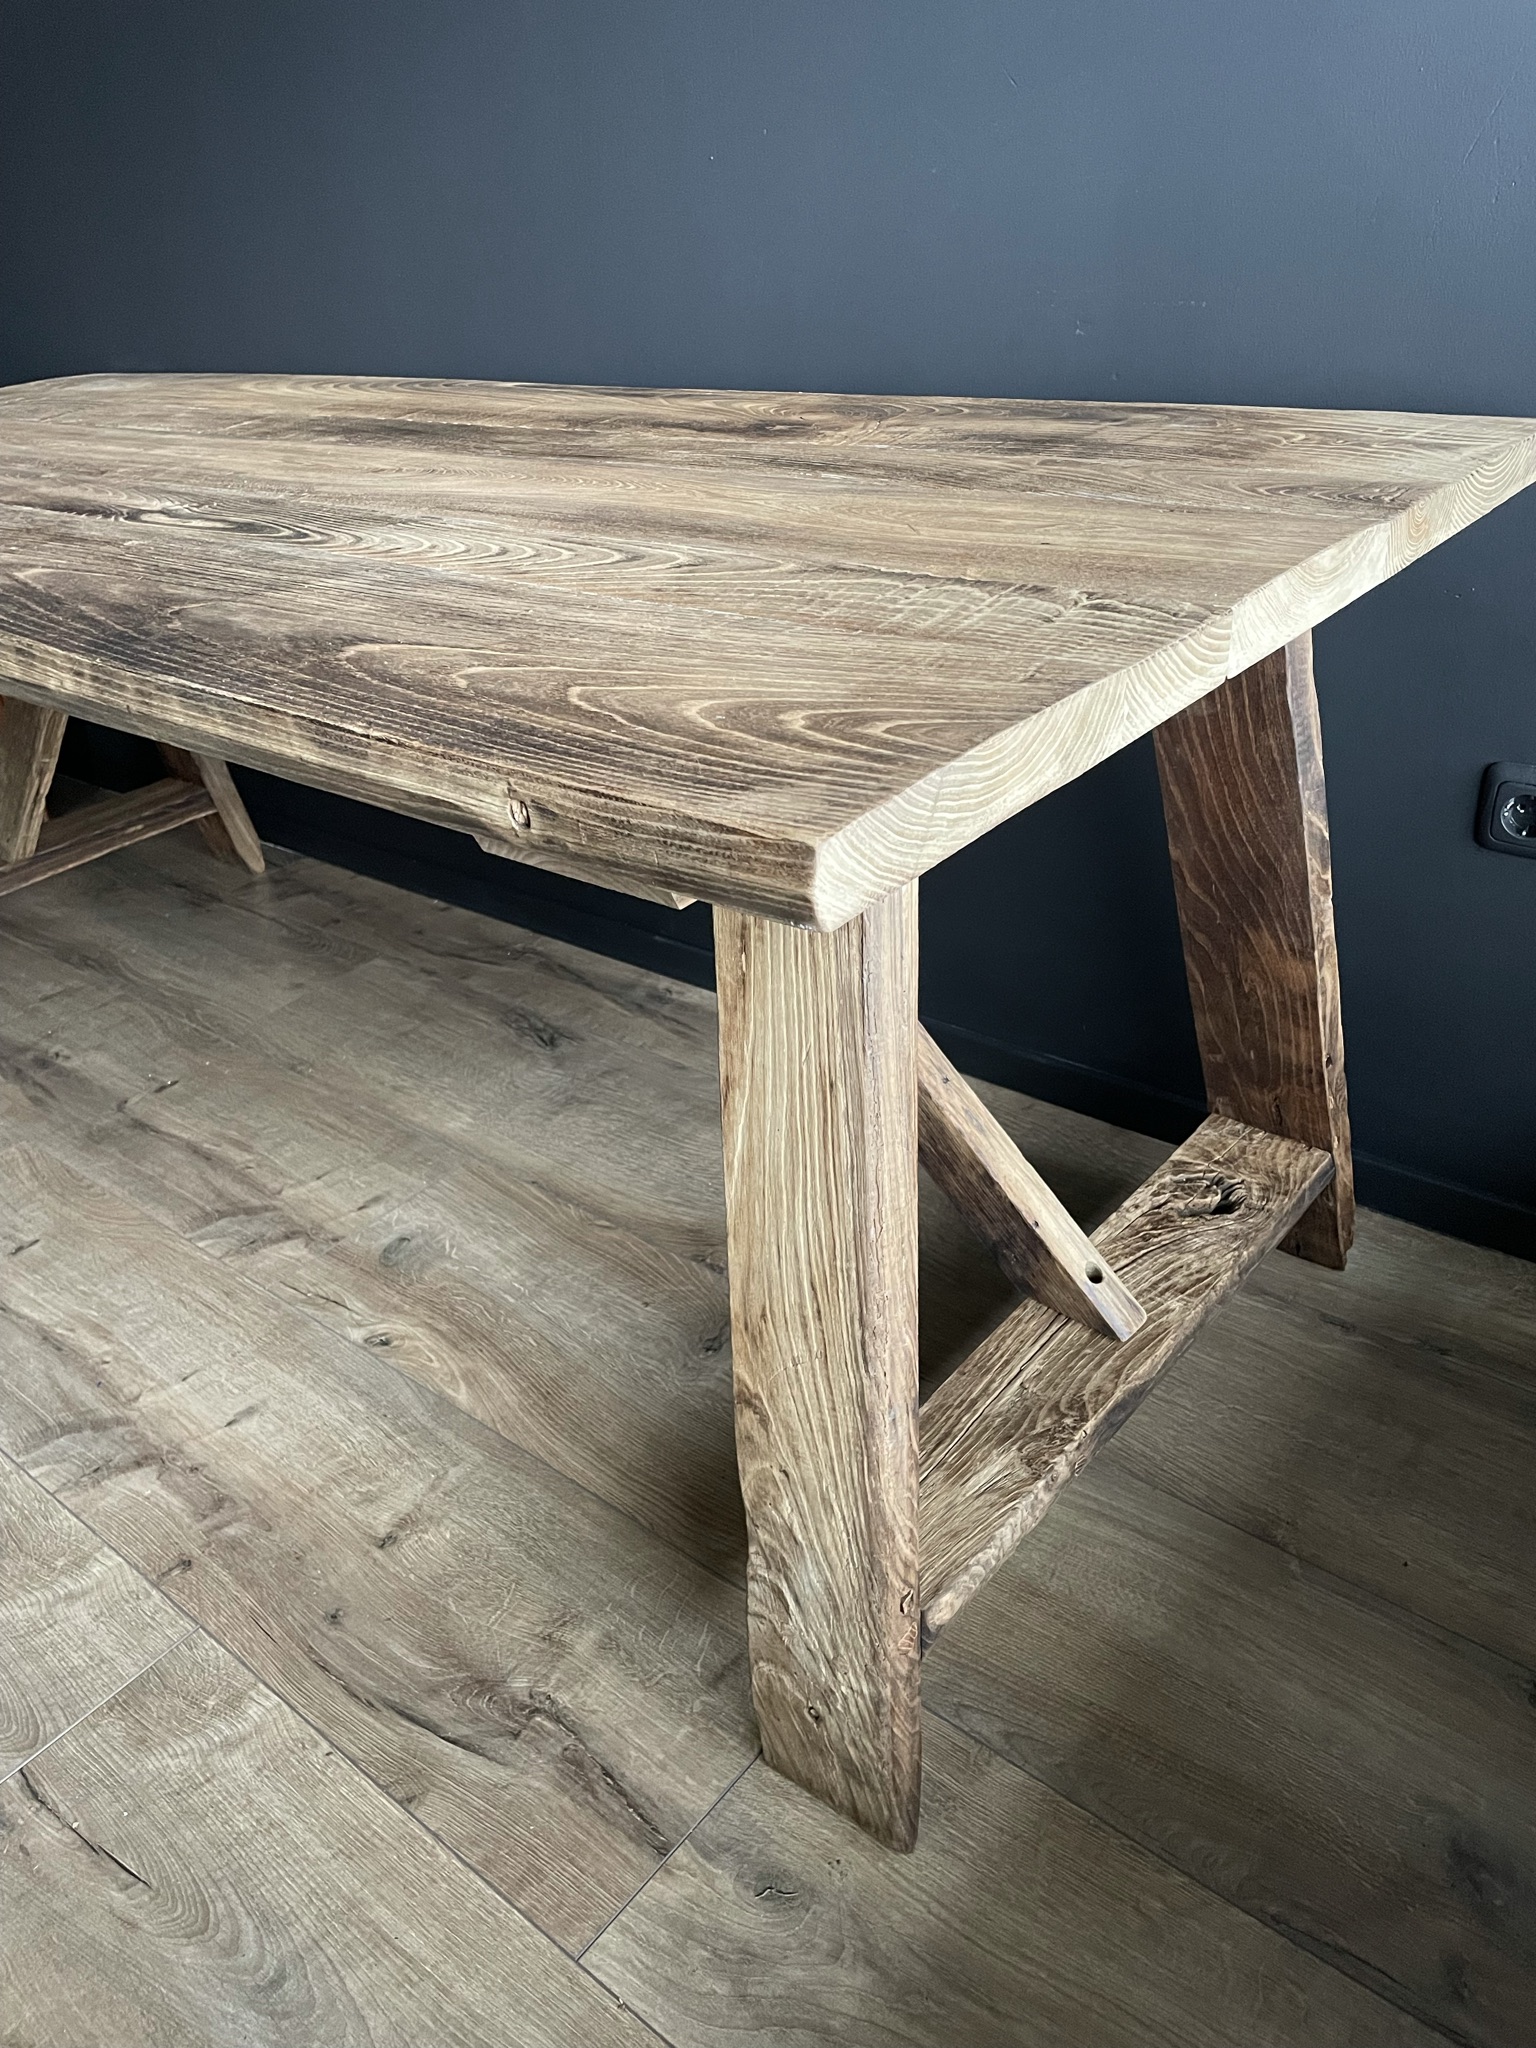 calorie Smash Mona Lisa Handgemaakte tafel van 200 jaar kastanje hout - BEAST Interiors